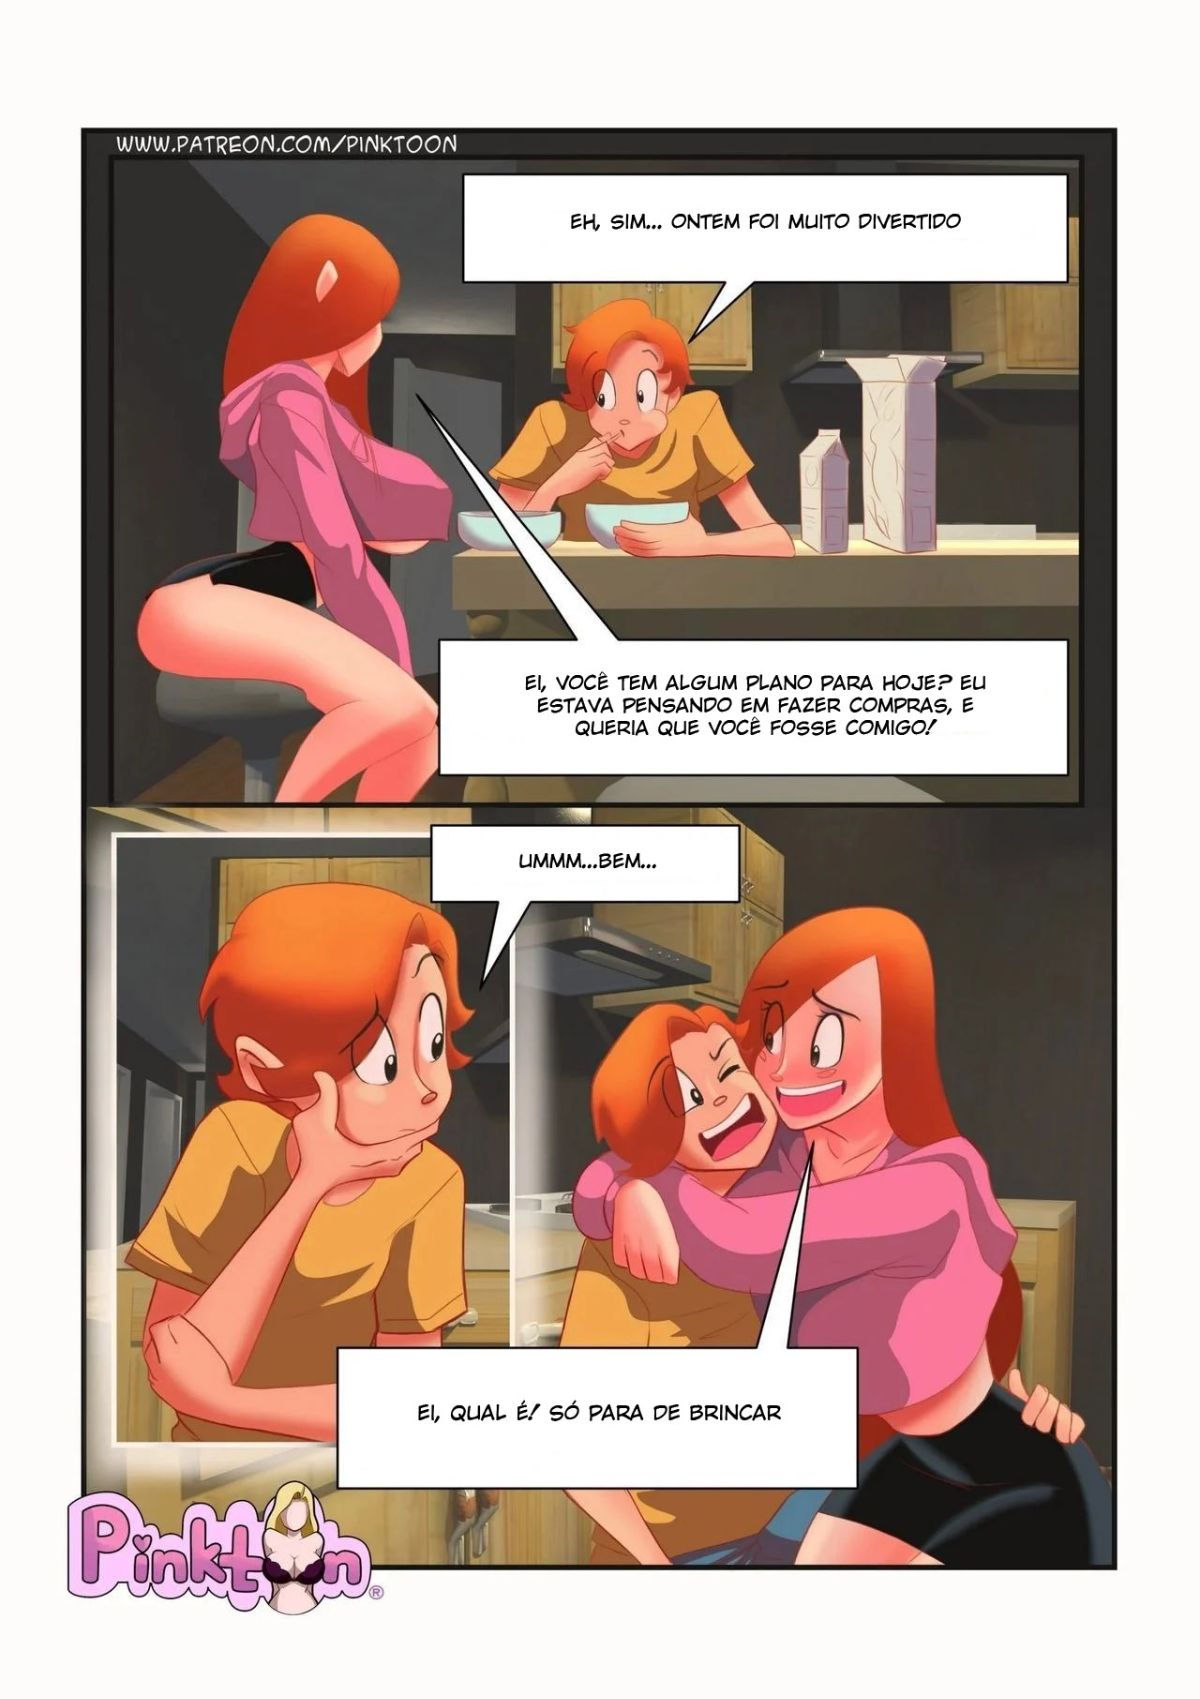 Secretos de Familia part 2 by Pinktoon Hentai pt-br 06